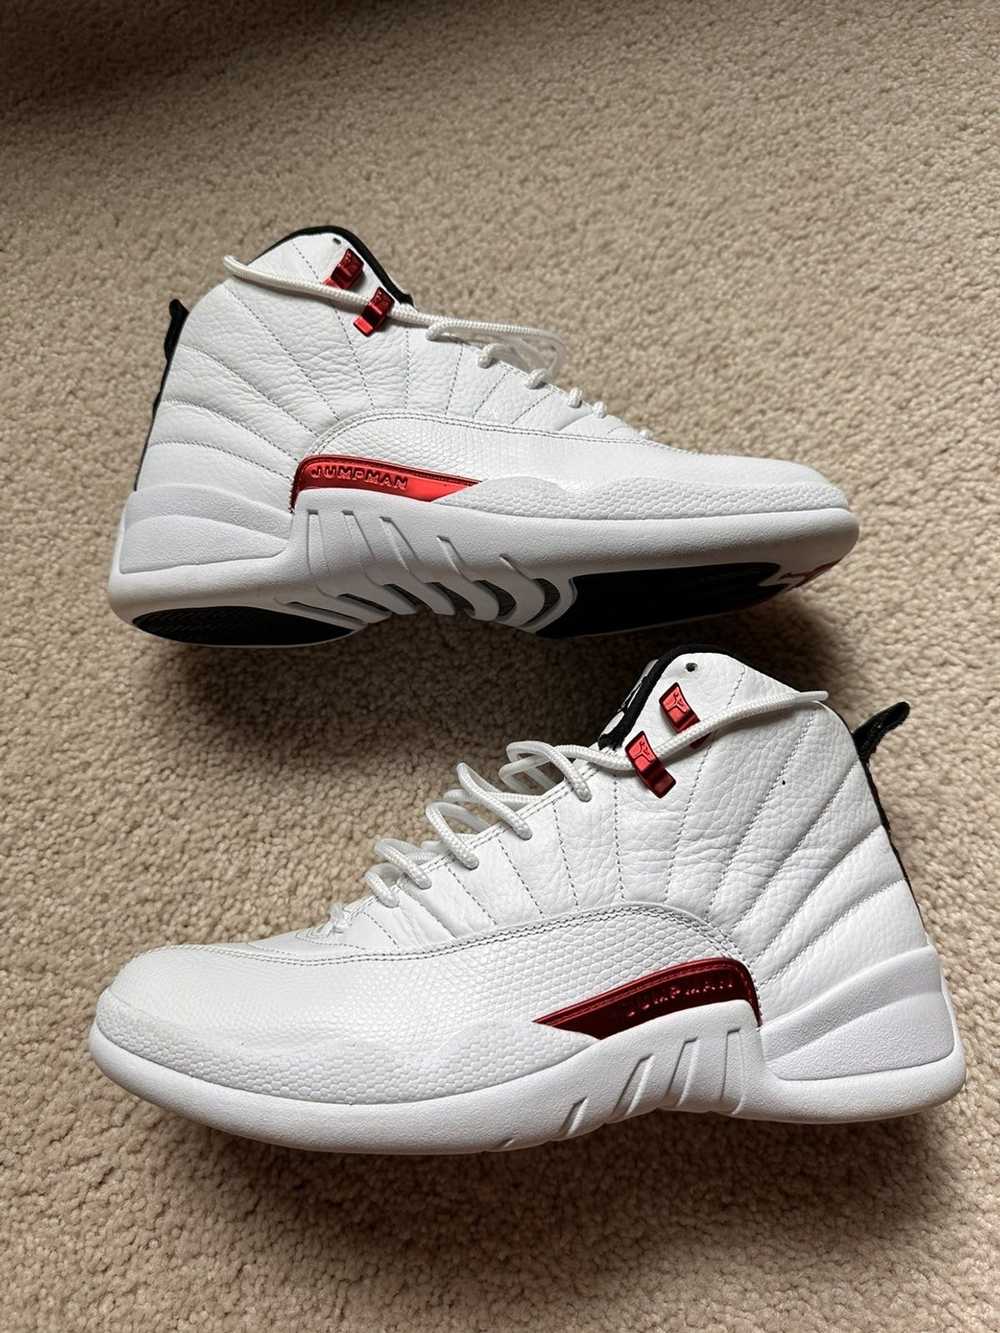 Jordan Brand × Nike Retro Jordan 12 - image 2